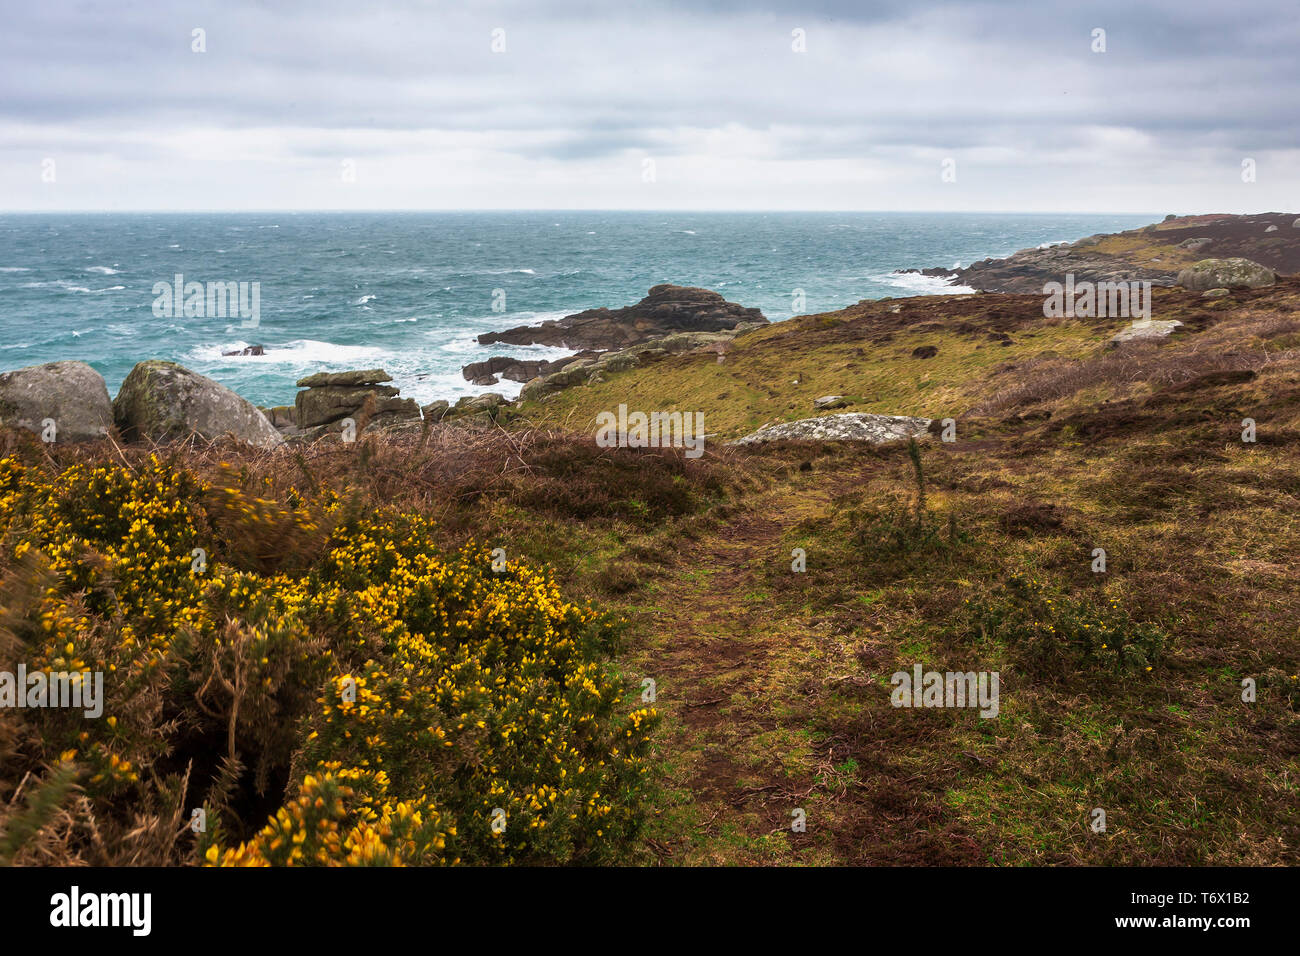 Gran Bretaña Rock y Porth naufragio de Normandía, Saint Mary's, Isles of Scilly, Reino Unido, en un día nublado y ventoso Foto de stock